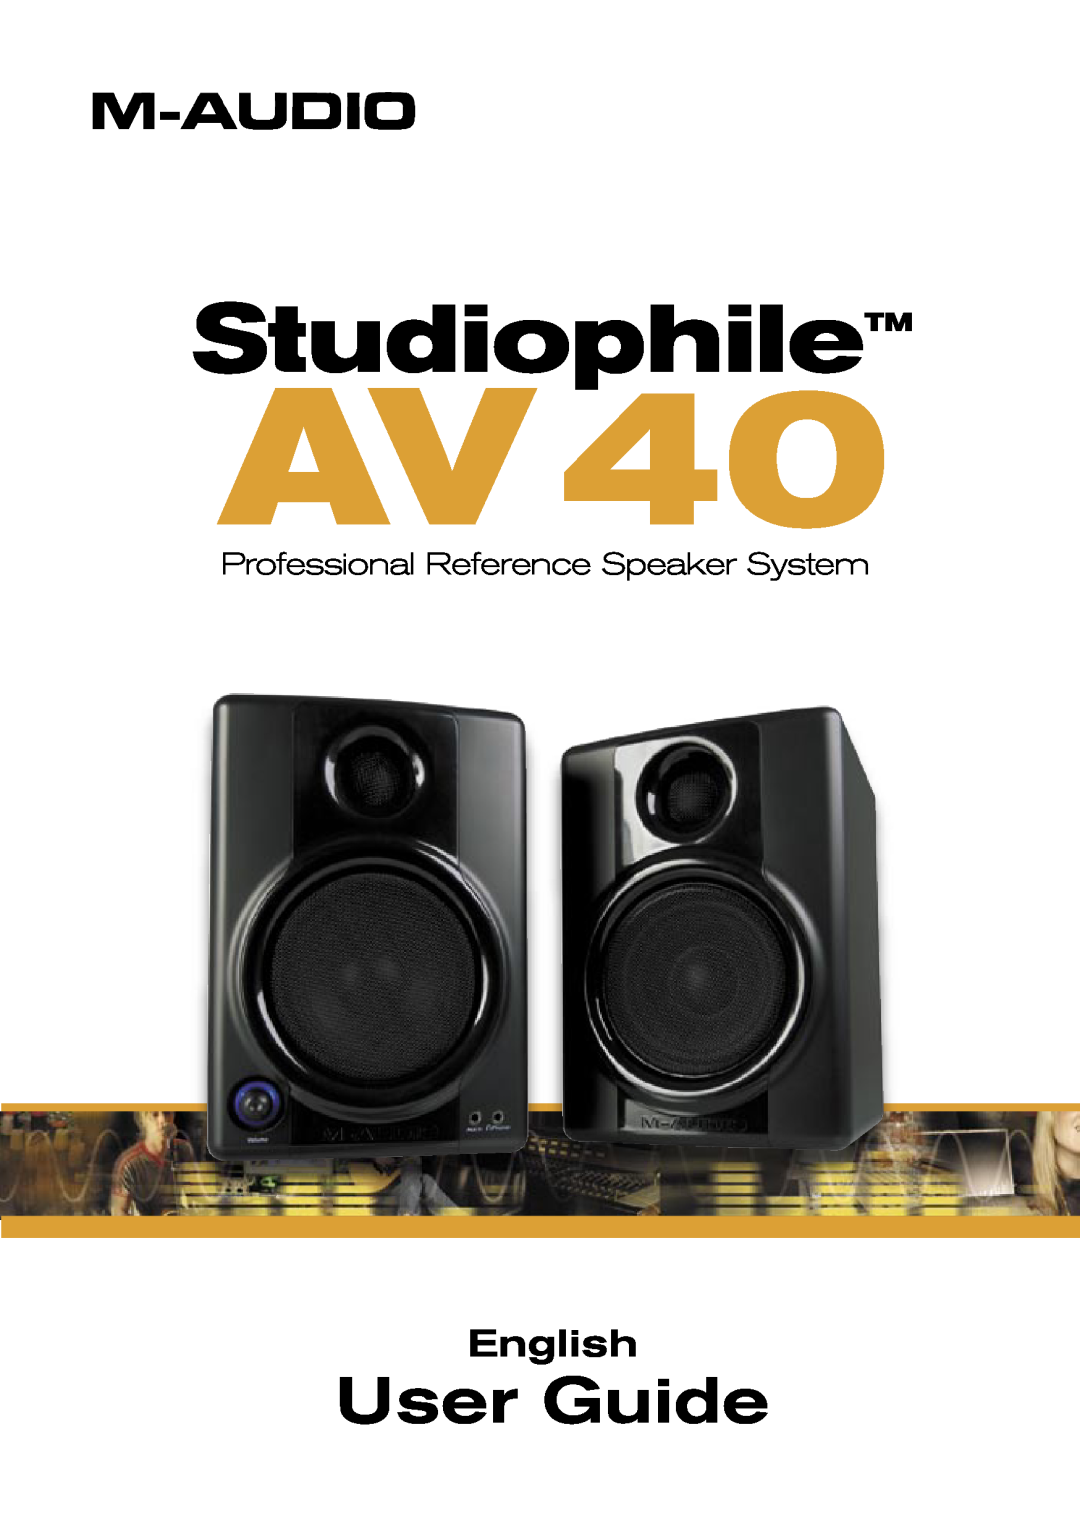 M-Audio AV40 manual StudiophileTM, User Guide, English, Professional Reference Speaker System 